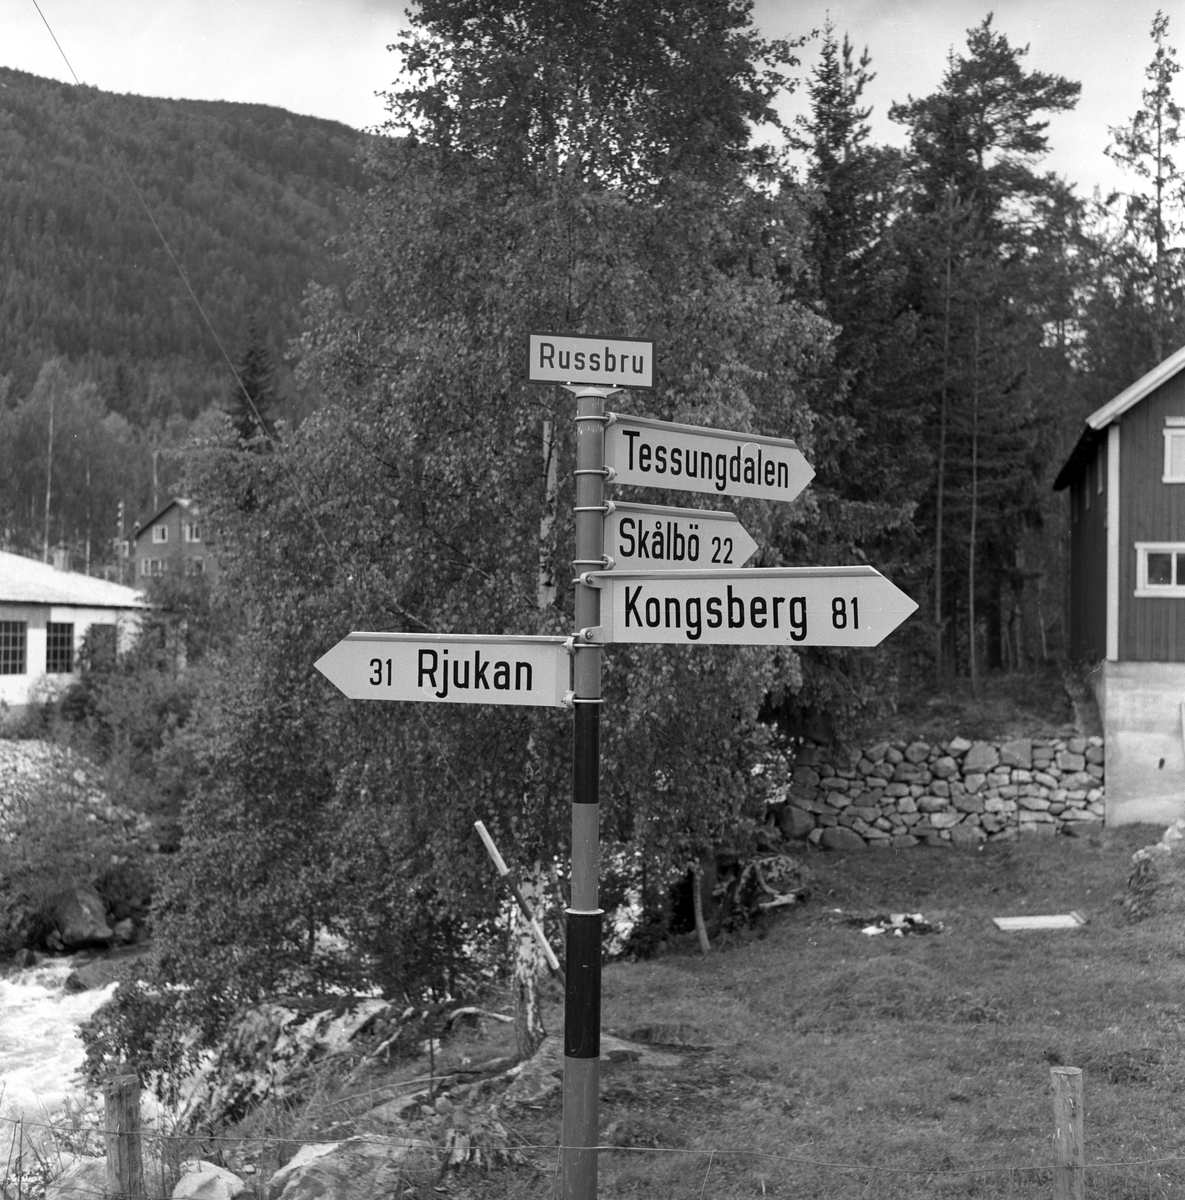 Veiskilt på Russbrue, med skilting til Rjukan, Tessungdalen, Skålbø og Kongsberg, på veien mellom Telemark og Uvdal.